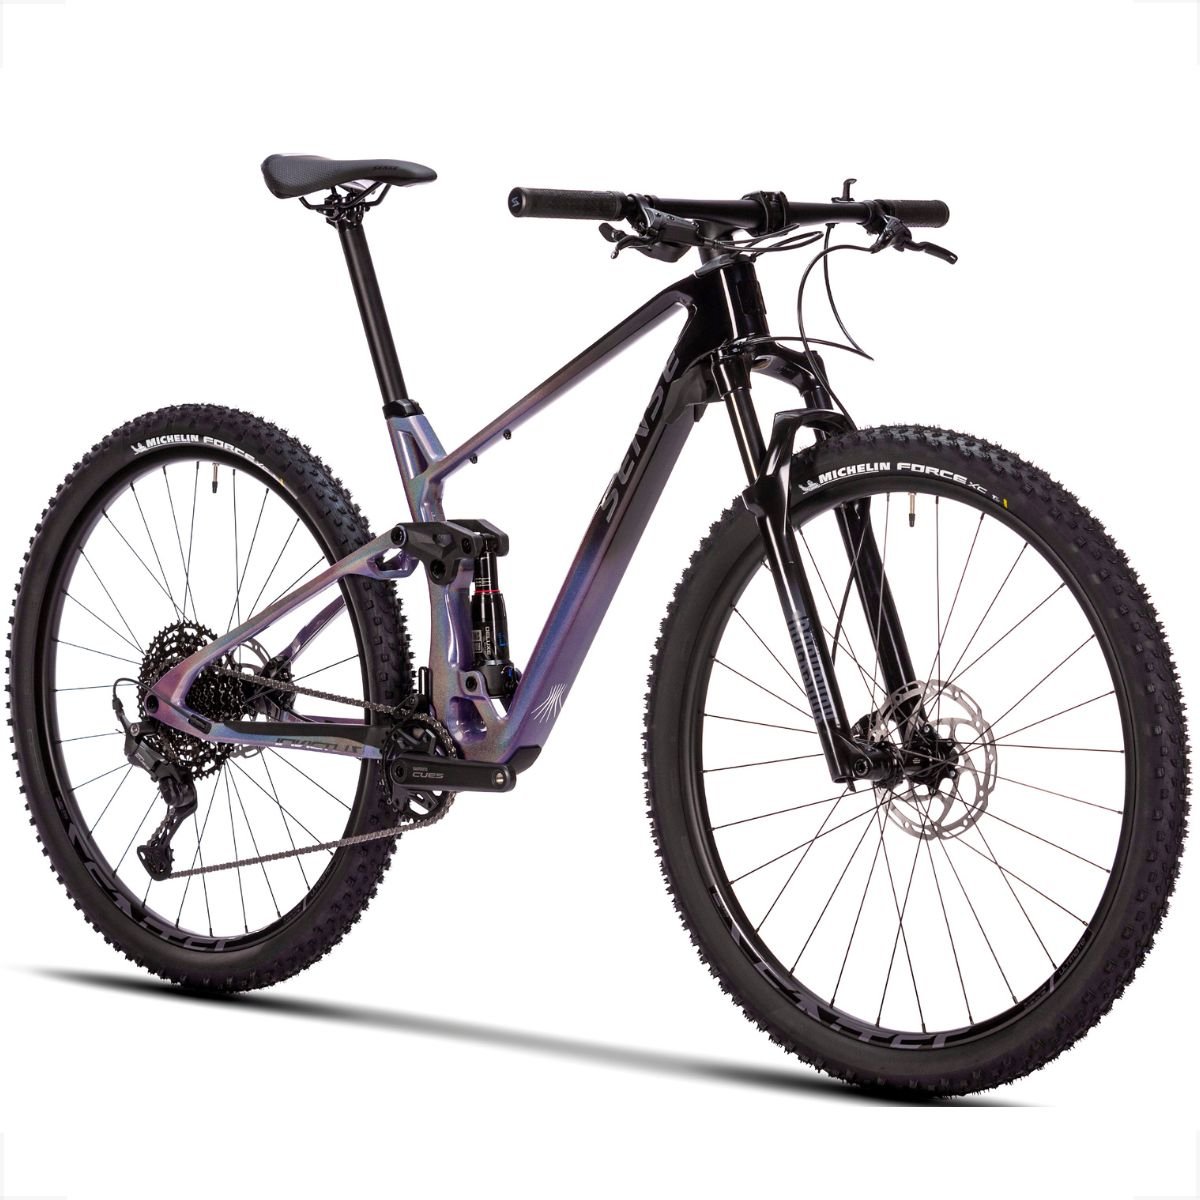 Bicicleta Full Sense Invictus Sport Carbono Shimano Cues:roxo+preto/17